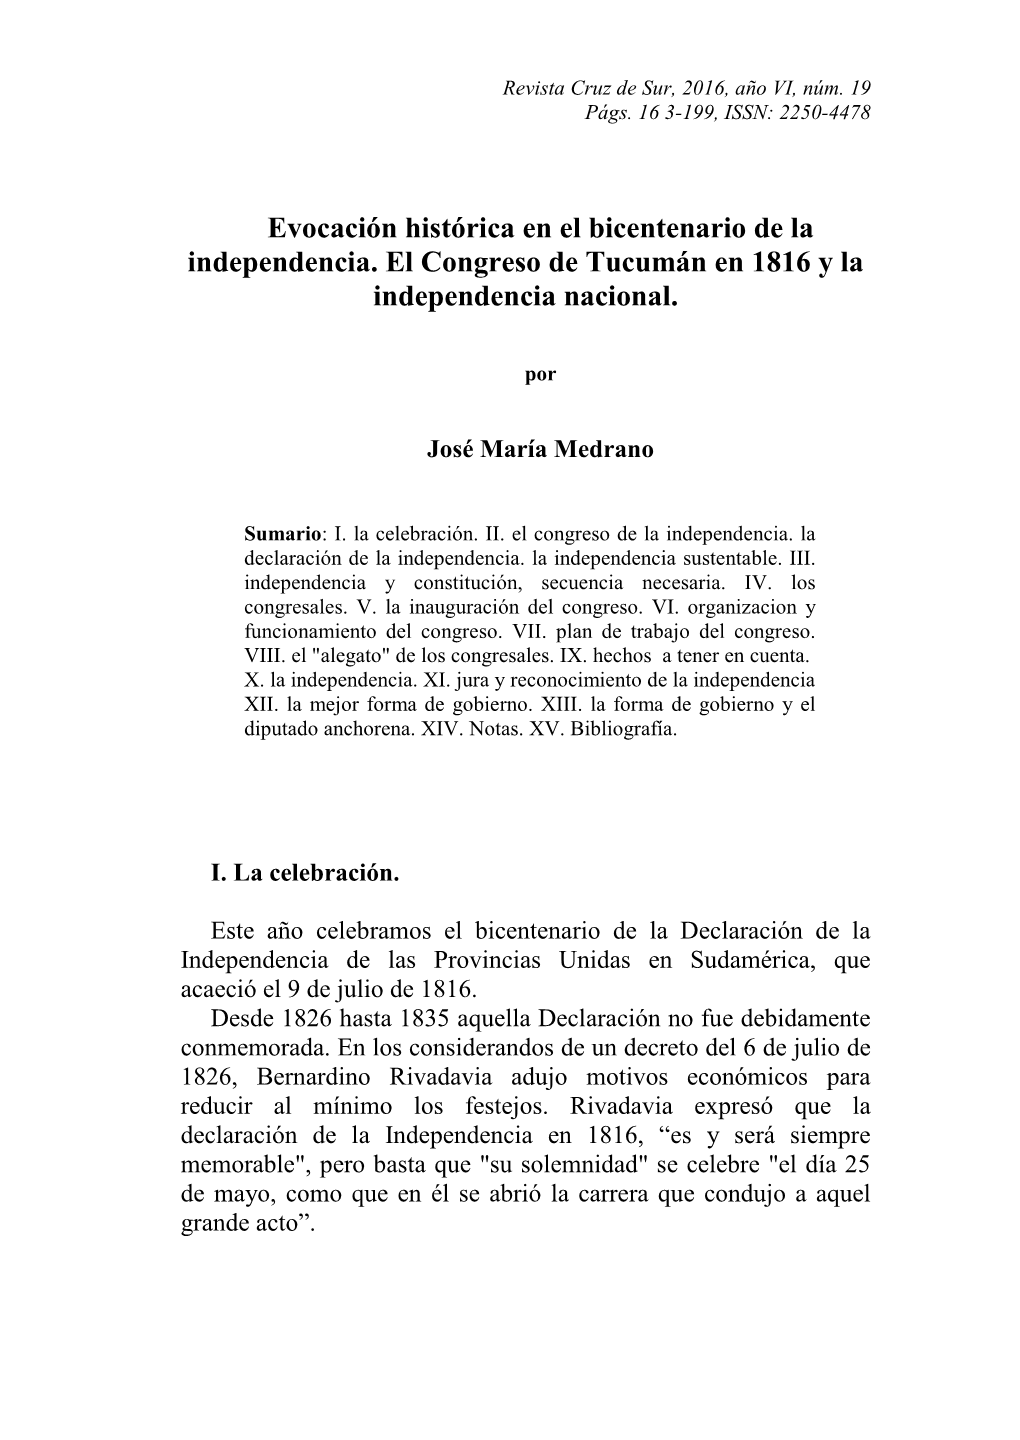 Evocación Histórica En El Bicentenario De La Independencia. El Congreso De Tucumán En 1816 Y La Independencia Nacional